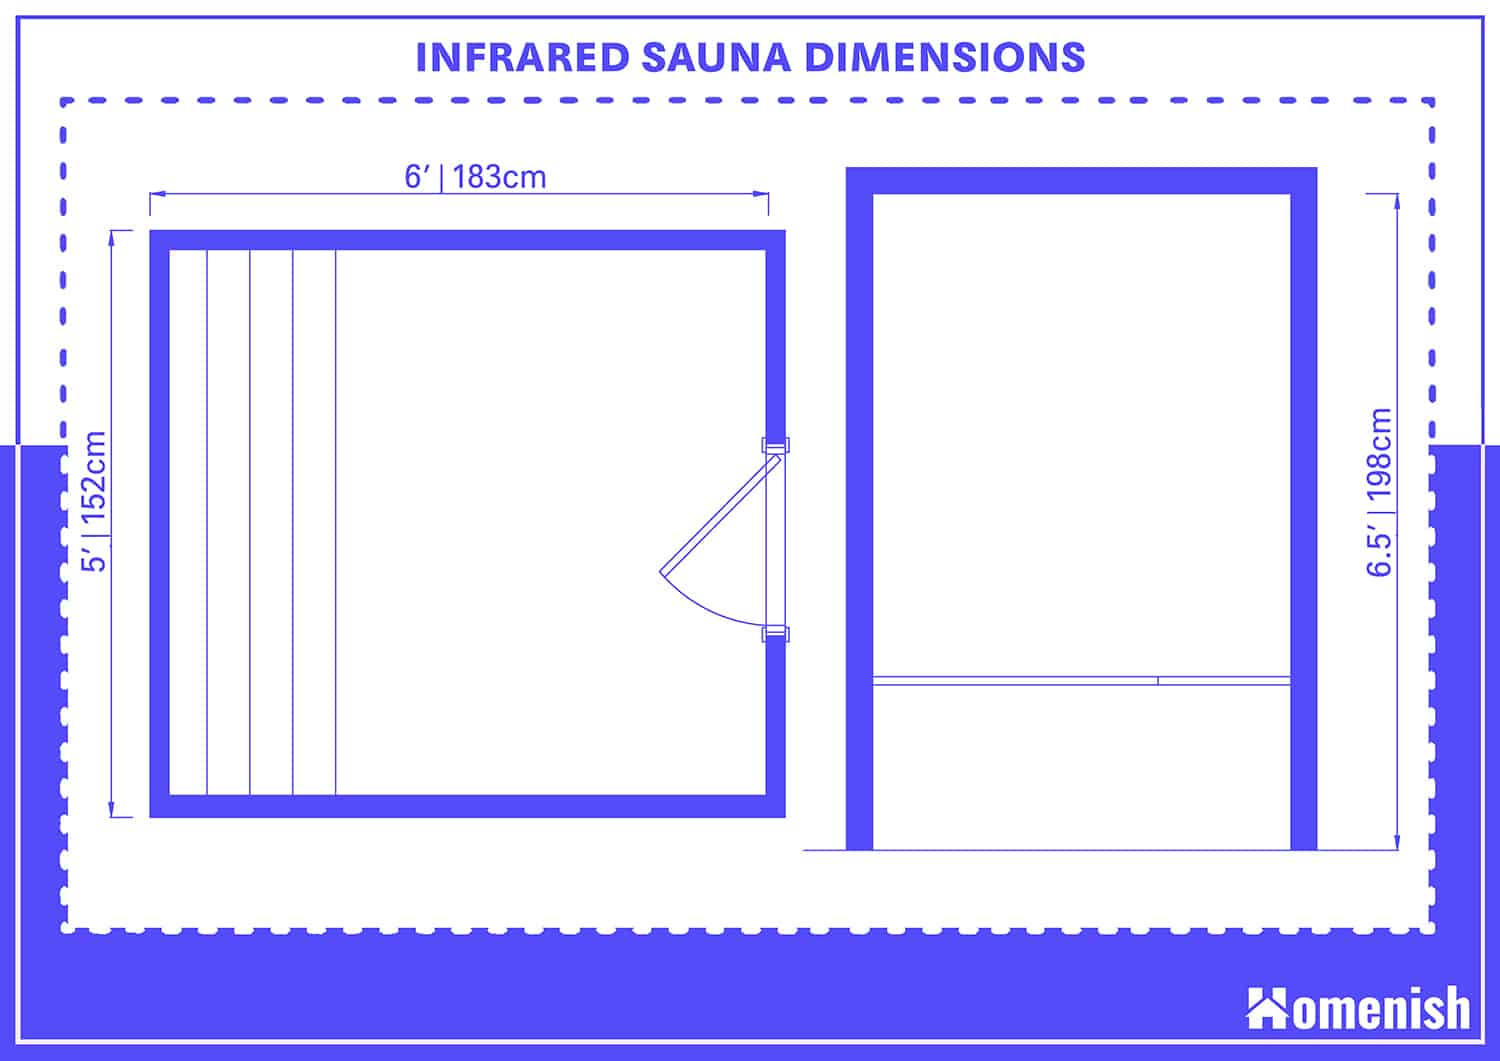 Infrared Sauna Dimensions